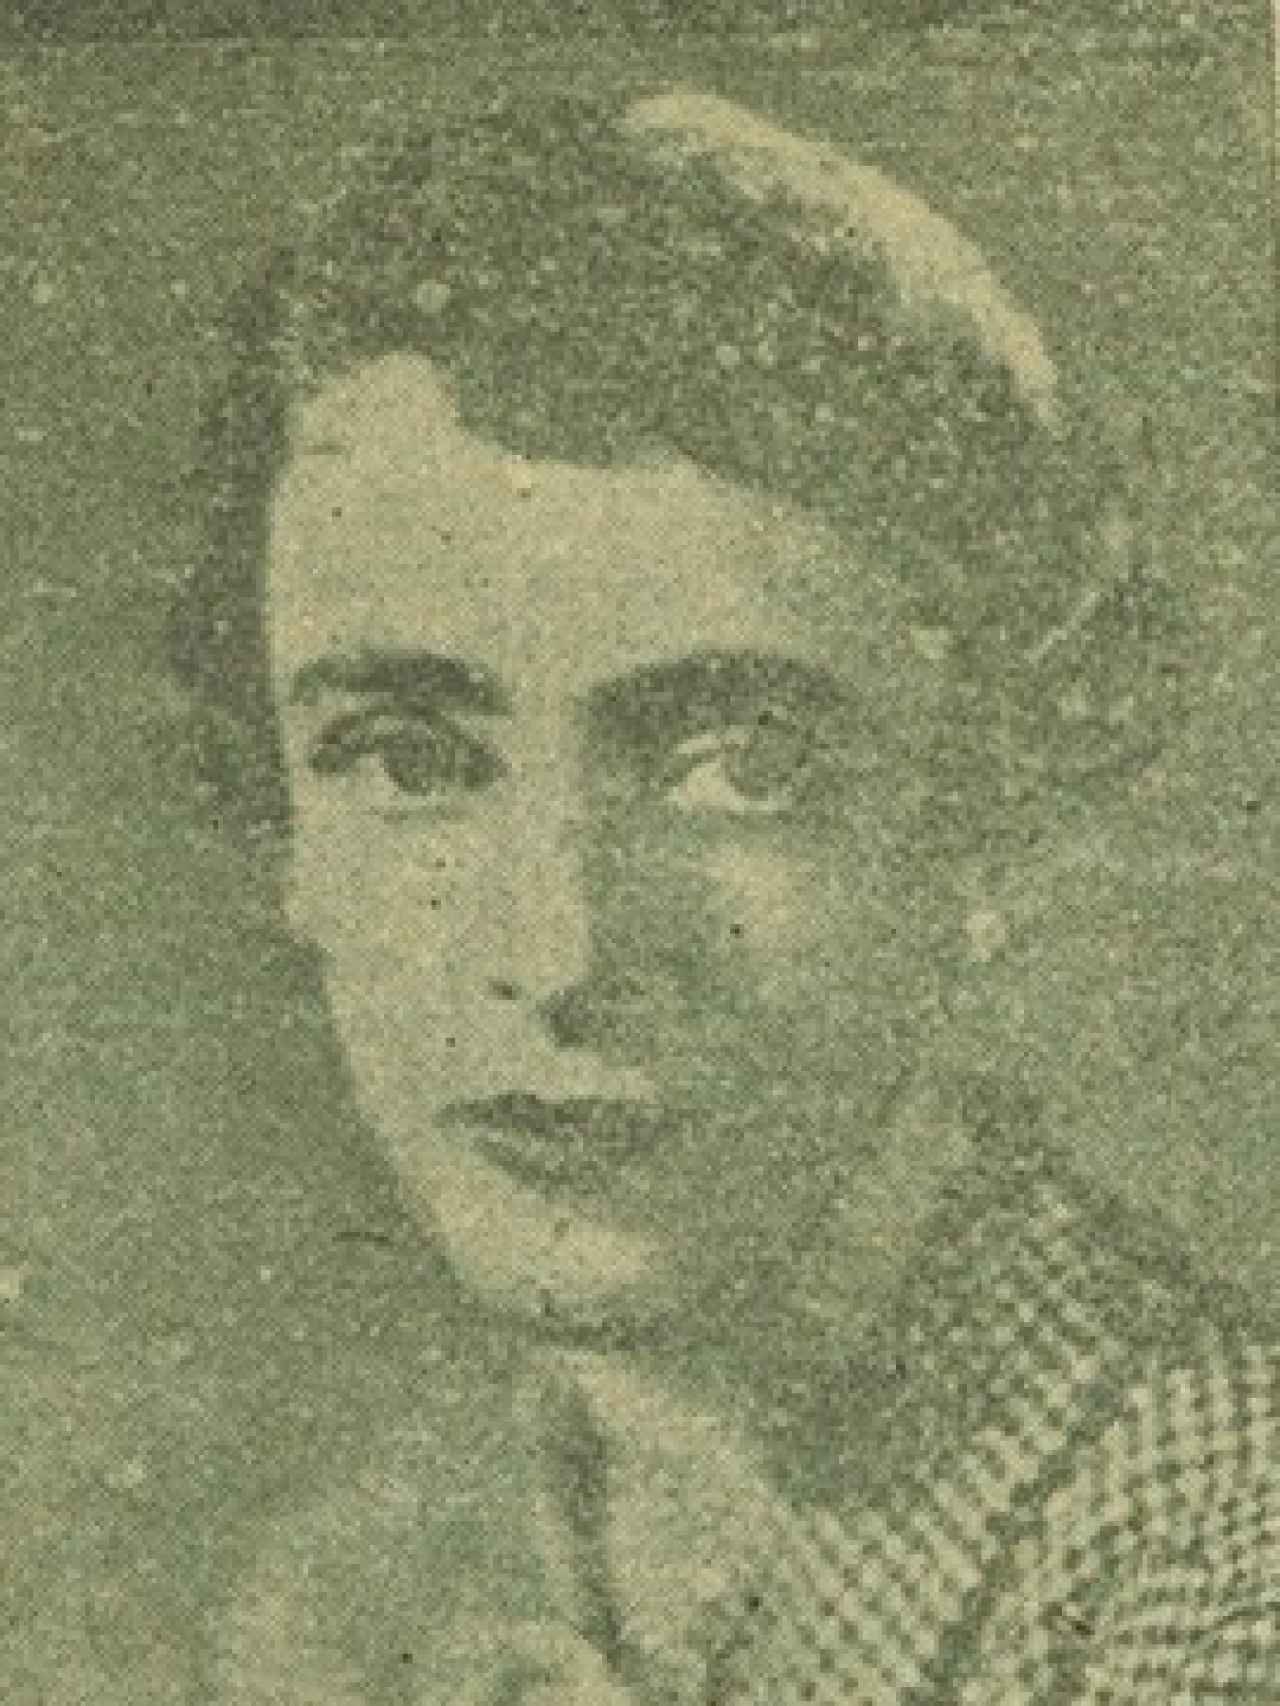 Recorte de prensa de 1941, en el que aparece fotografiada la duquesa de Lécera. Cortesía_ Archivo Manuel de Falla